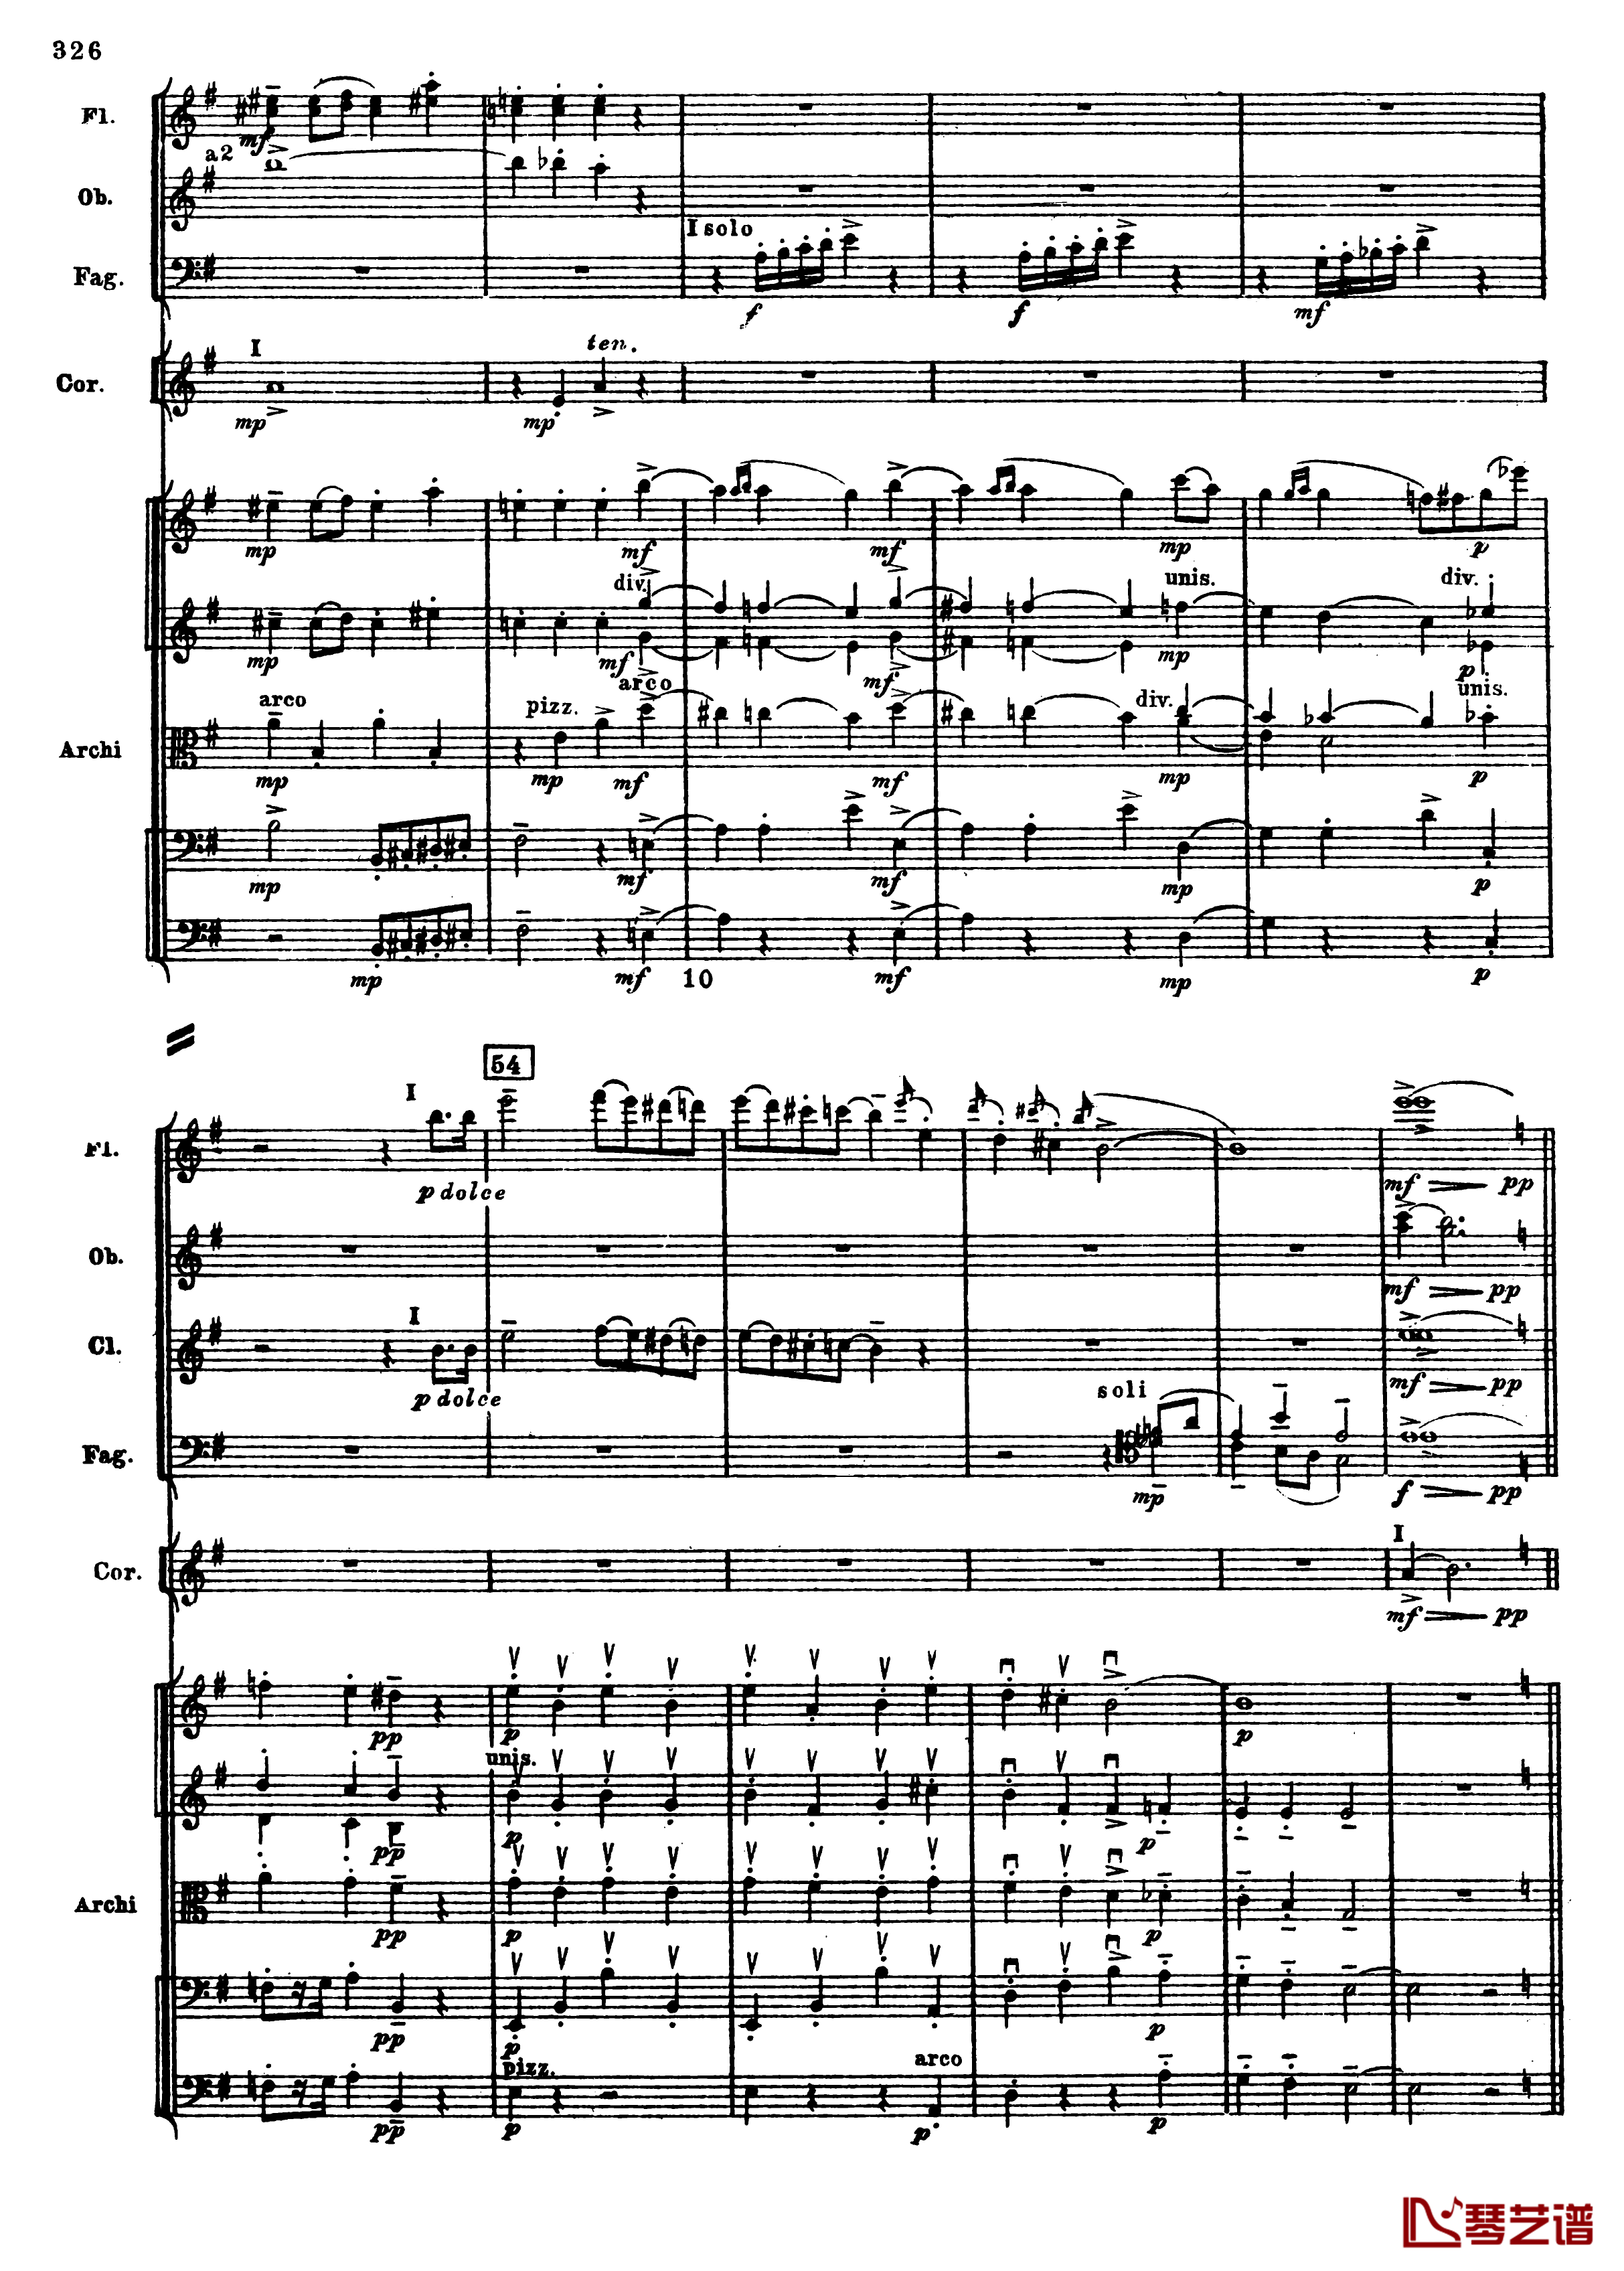 普罗科菲耶夫第三钢琴协奏曲钢琴谱-总谱-普罗科非耶夫58